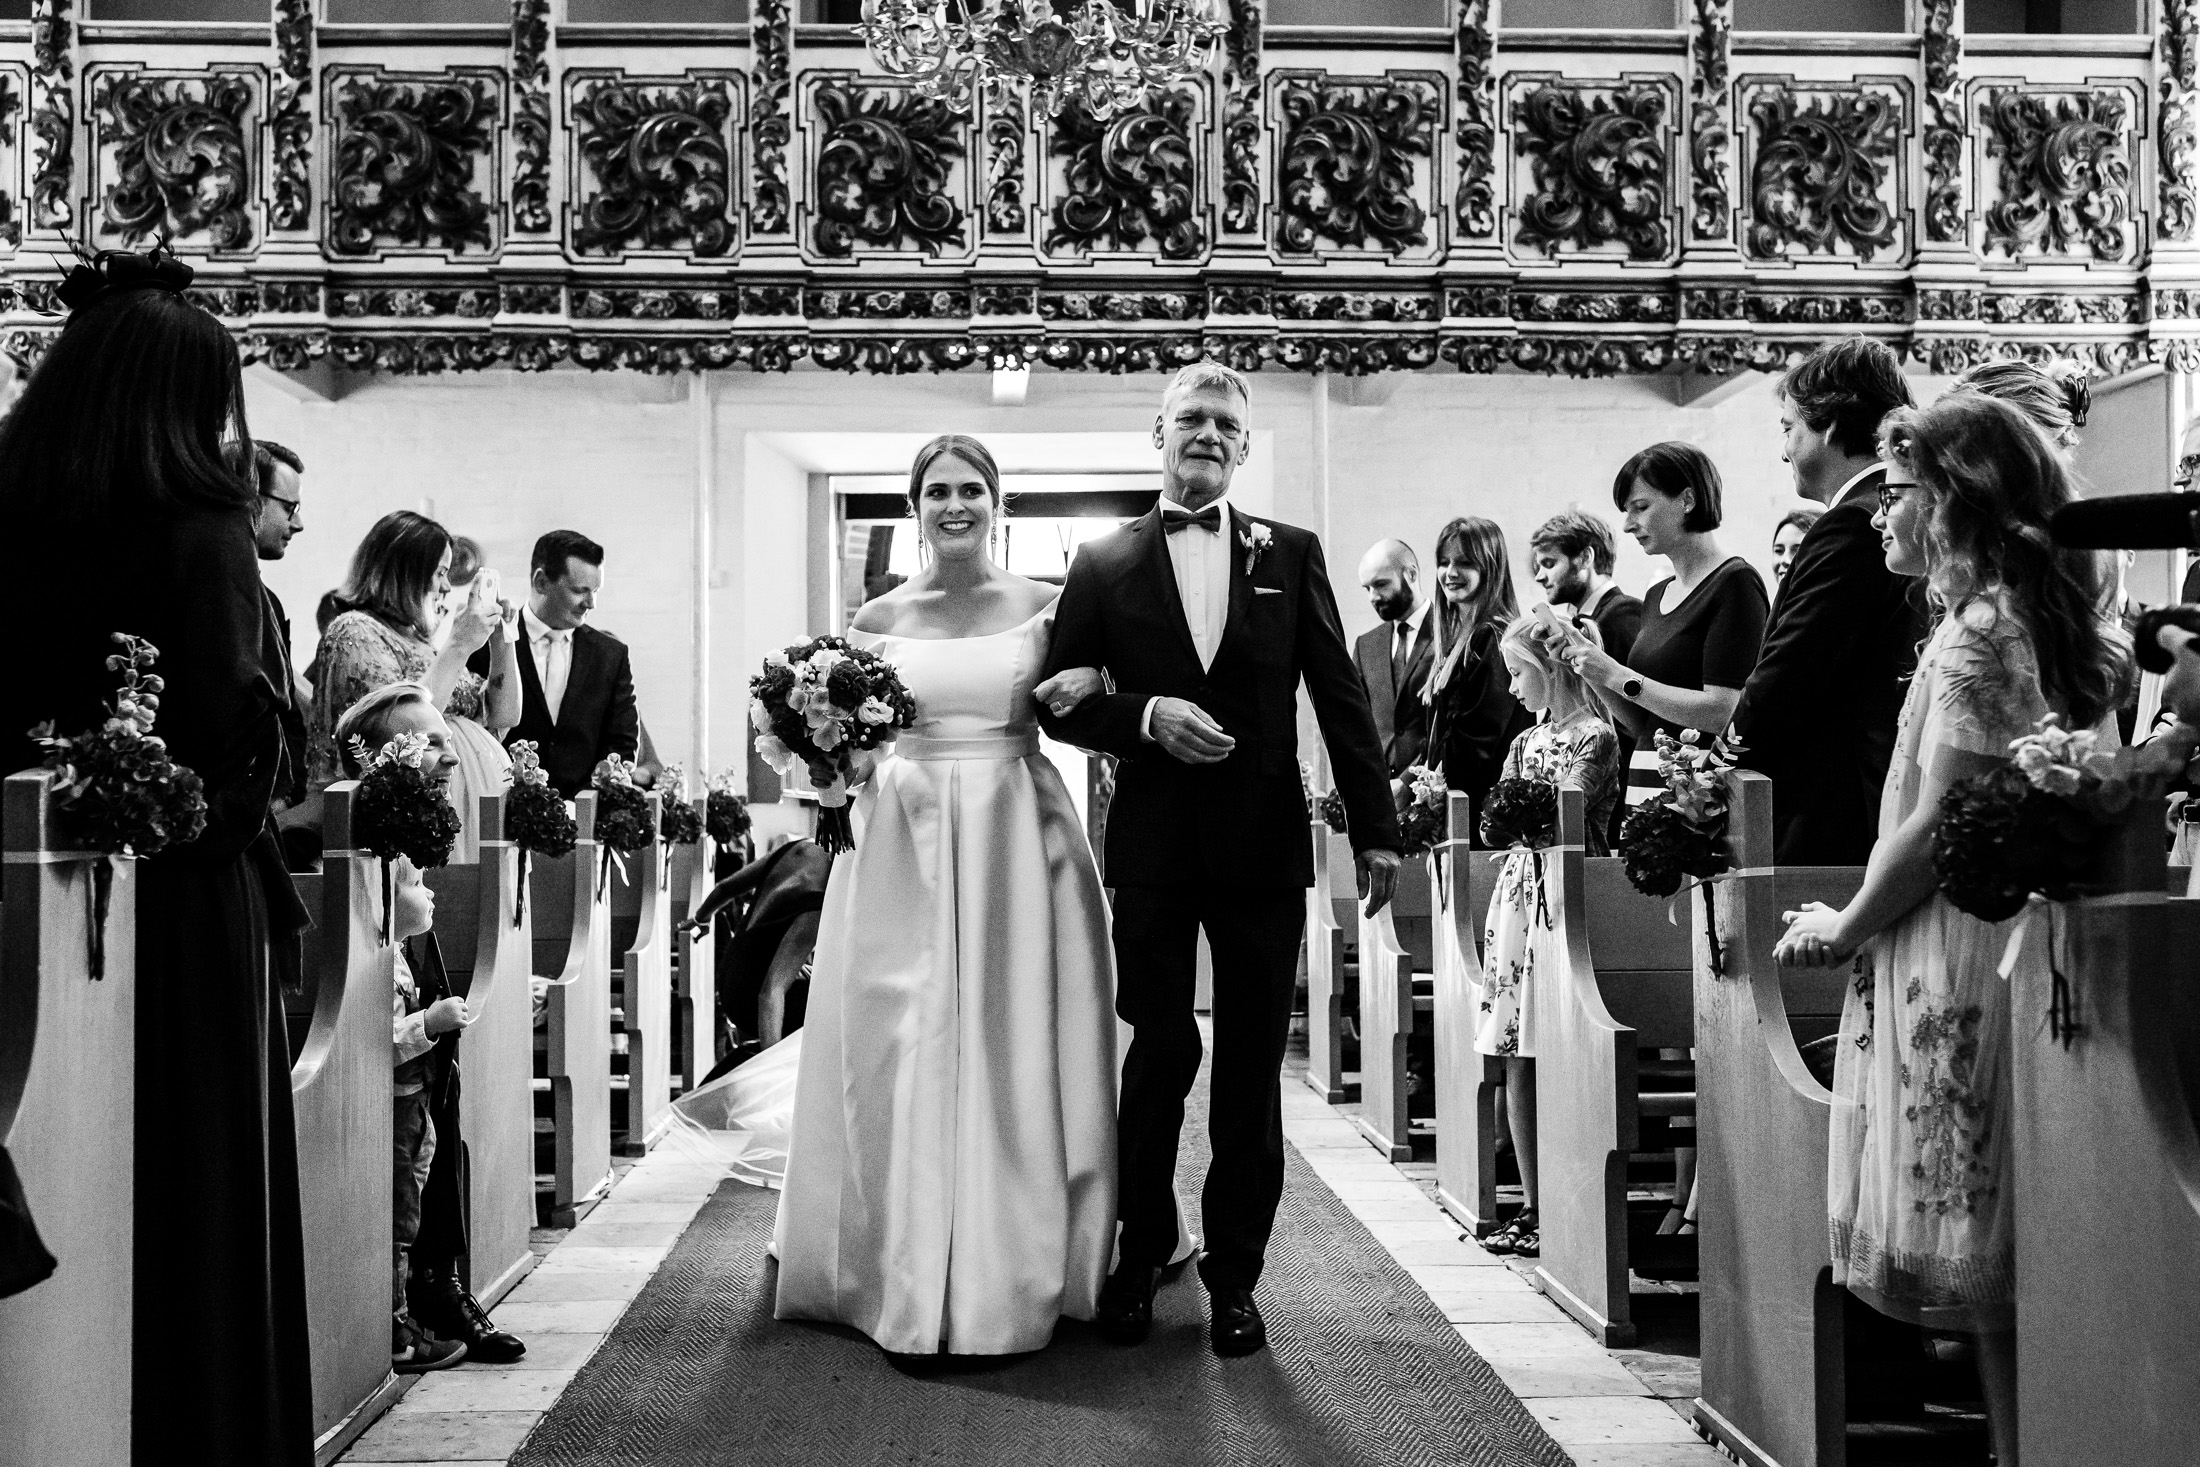 Trouwceremonie kerk | Trouwen in een kerk | Journalistieke trouwfotografie | Ongeposeerde trouwfotografie | Zwart wit trouwfoto | Let Me Tell Your Story